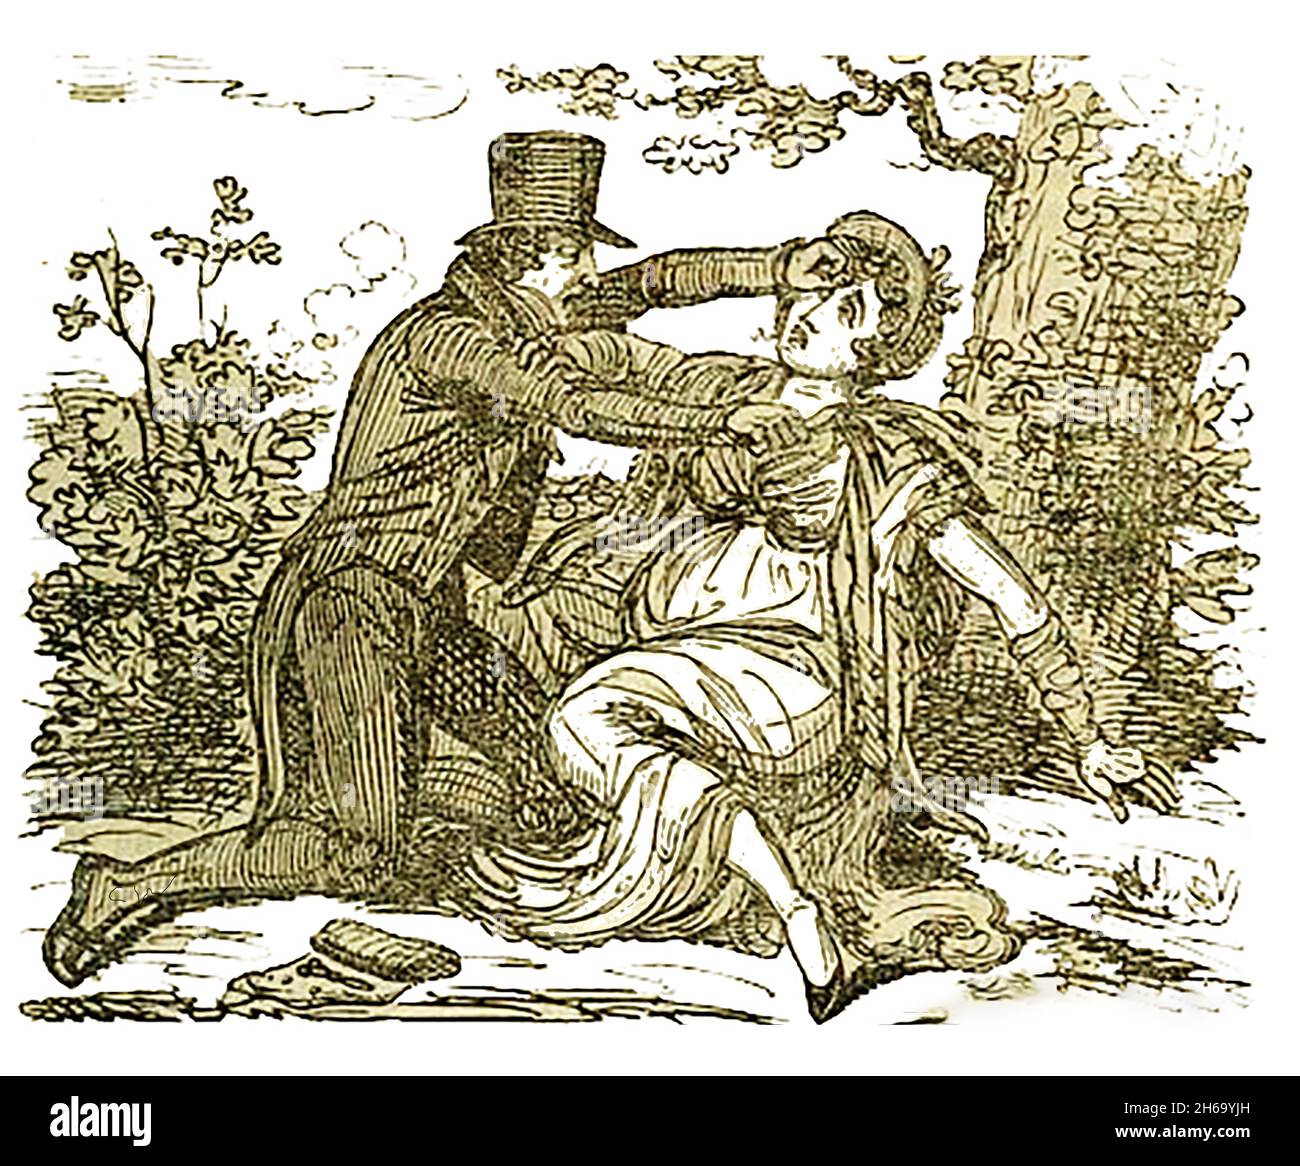 1824 George Caddell de Bromsgrove, qui était un apothicaire et un chirurgien autodidacte, a été exécuté pour le meurtre de son amant enceinte (portant l'enfant d'un soldat) Elizabeth Price, qu'il avait promis de se marier puis a changé d'avis.Après avoir coupé sa gorge dans un champ, il a fait son évasion, laissant derrière lui le couteau et son cas d'instruments qui était suffisant pour le condamner.Il a été reconnu coupable et condamné à mort par exécution le 21 juillet 1700. Banque D'Images